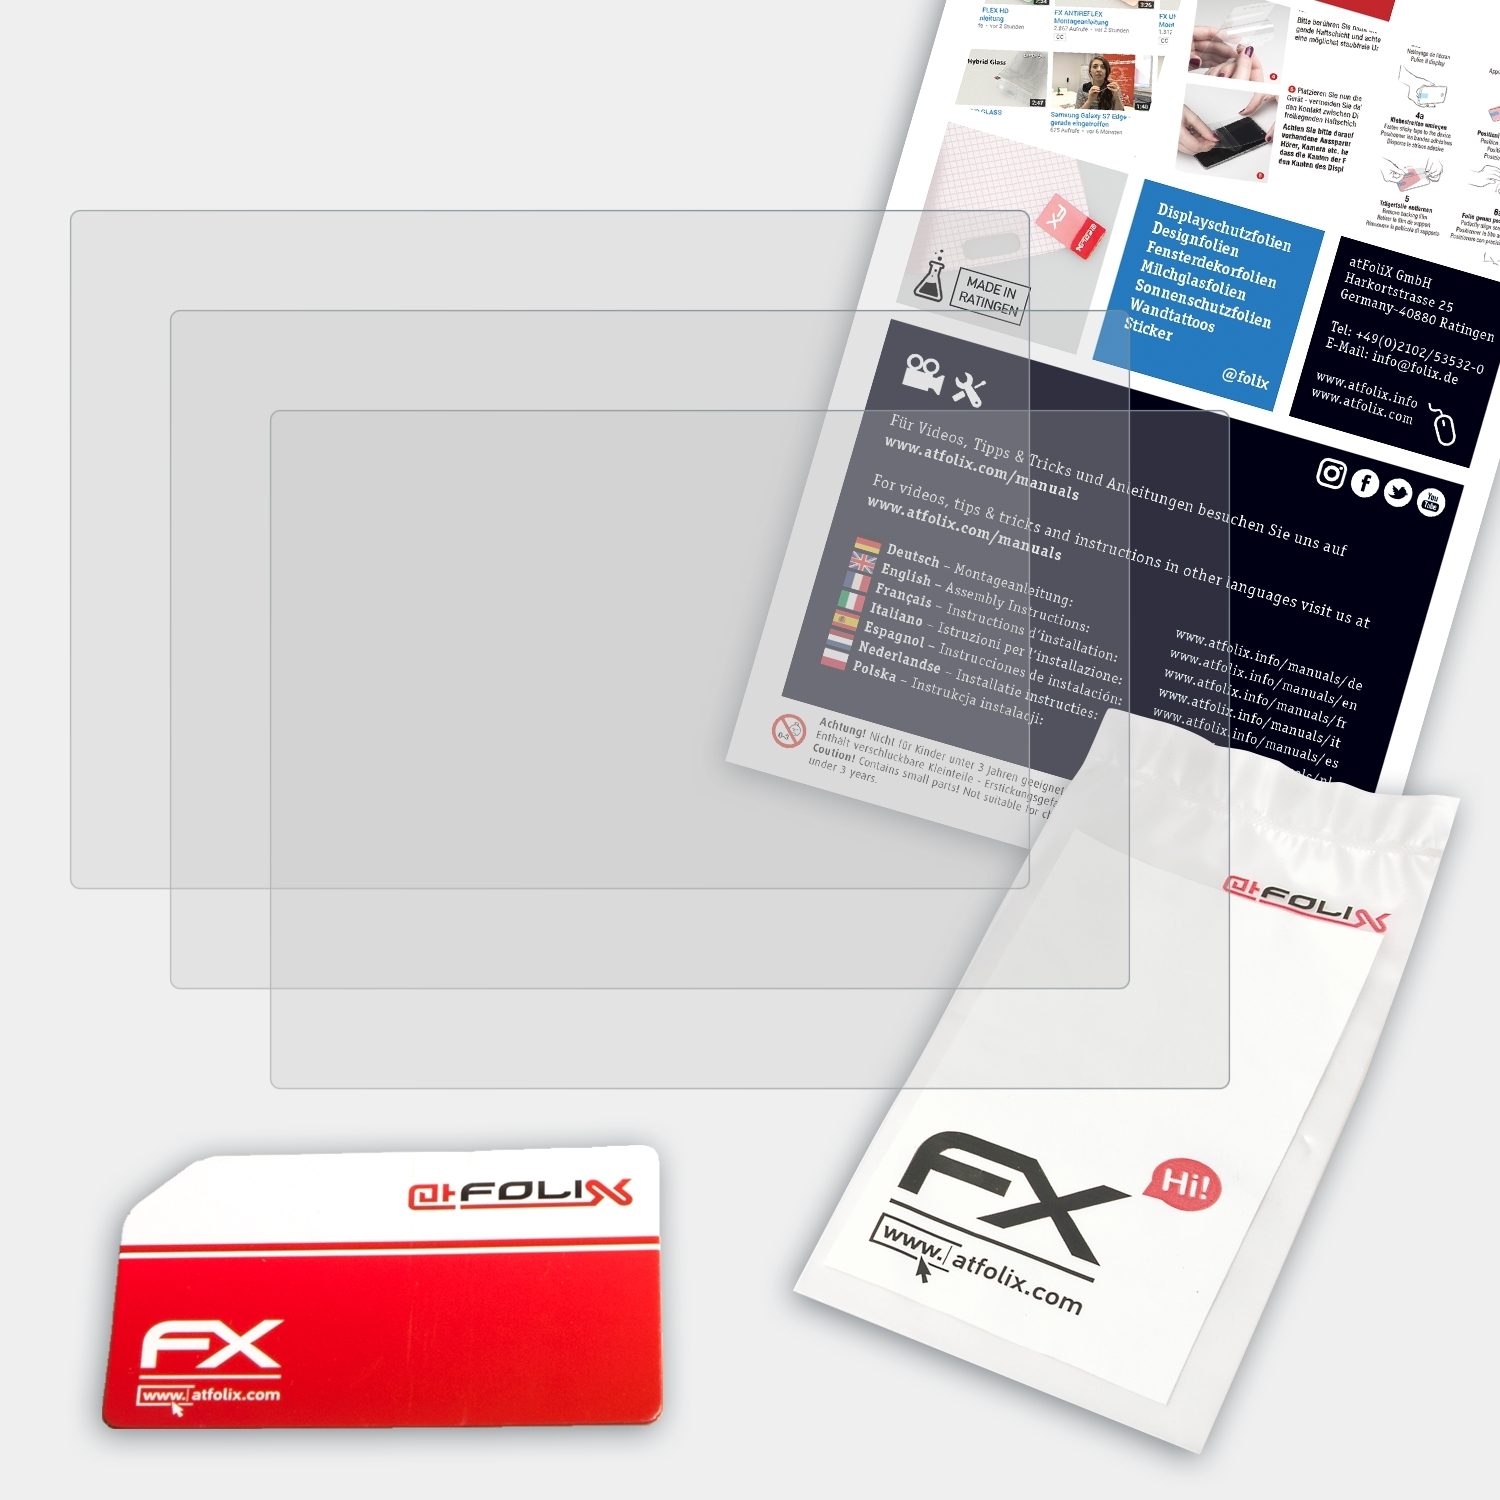 ATFOLIX 3x FX-Antireflex Displayschutz(für Fujifilm XQ2)